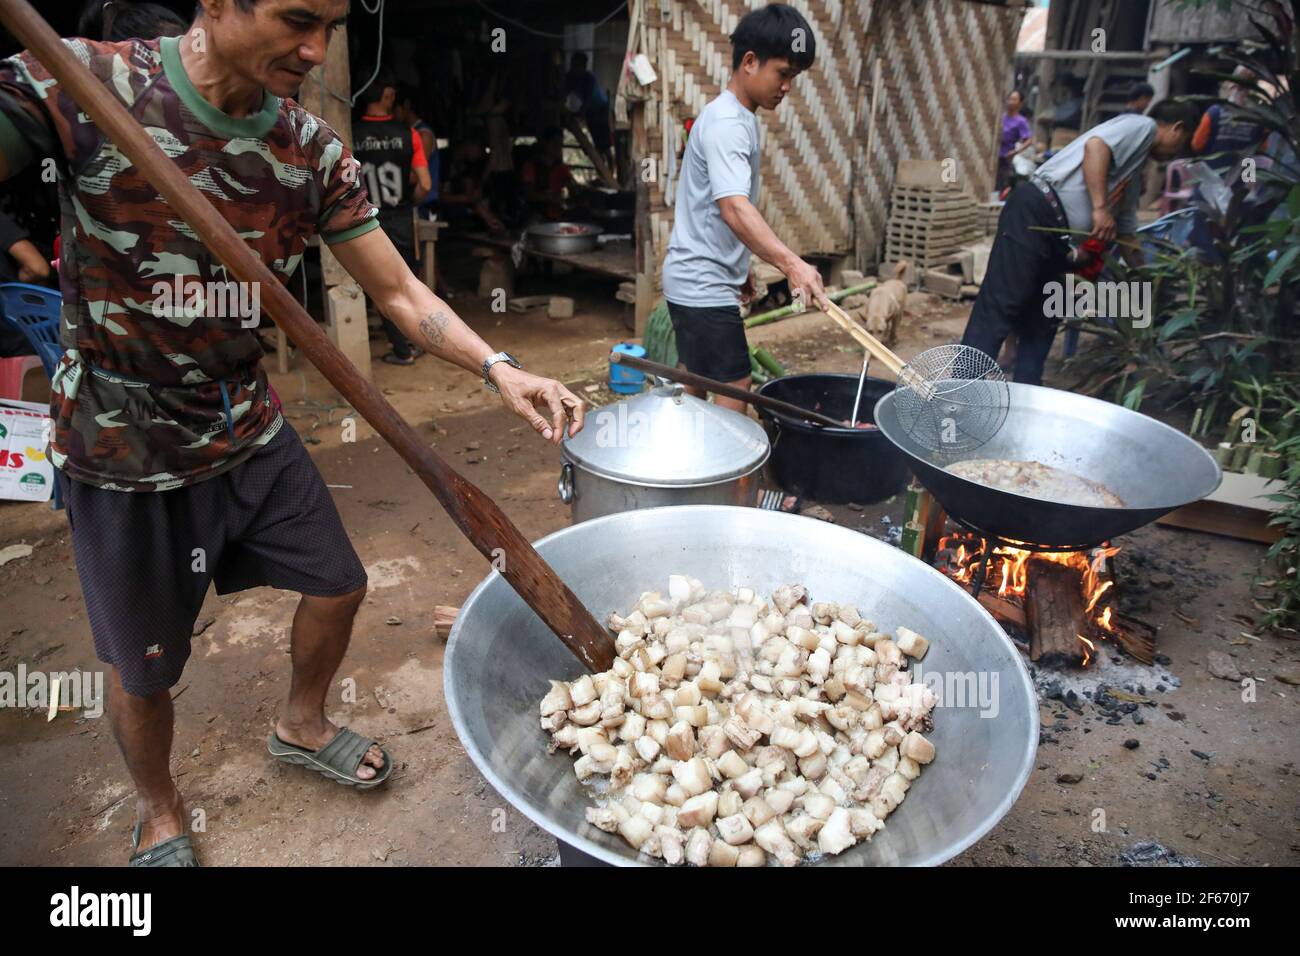 Izzie, 49, ehemalige Karenni-Armee (KNPP) kocht während eines Todestages im Dorf Kayan, wo Menschen, die während des Krieges zwischen der Armee Myanmars und ethnischen Armeegruppen 1990s aus Myanmar geflohen sind, am 25. März 2021 in Mae Hong Son, Thailand, leben. Bild aufgenommen am 25. März 2021. REUTERS/Soe Zeya tun Stockfoto